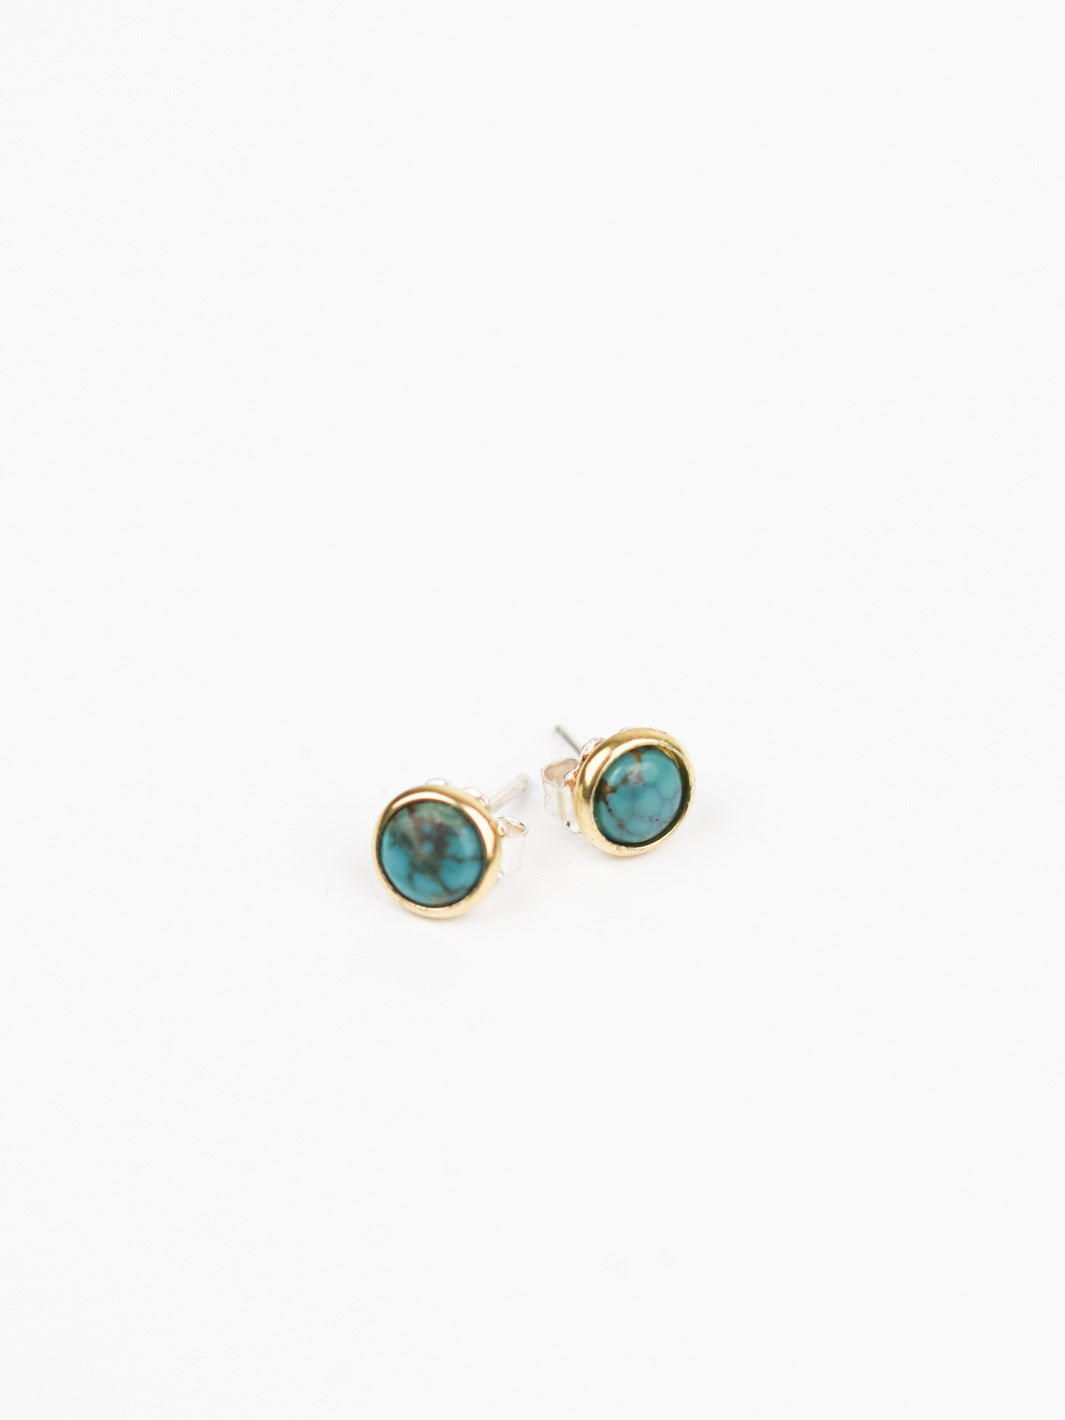 Hyalite Turquoise Stud Earrings - Heyday